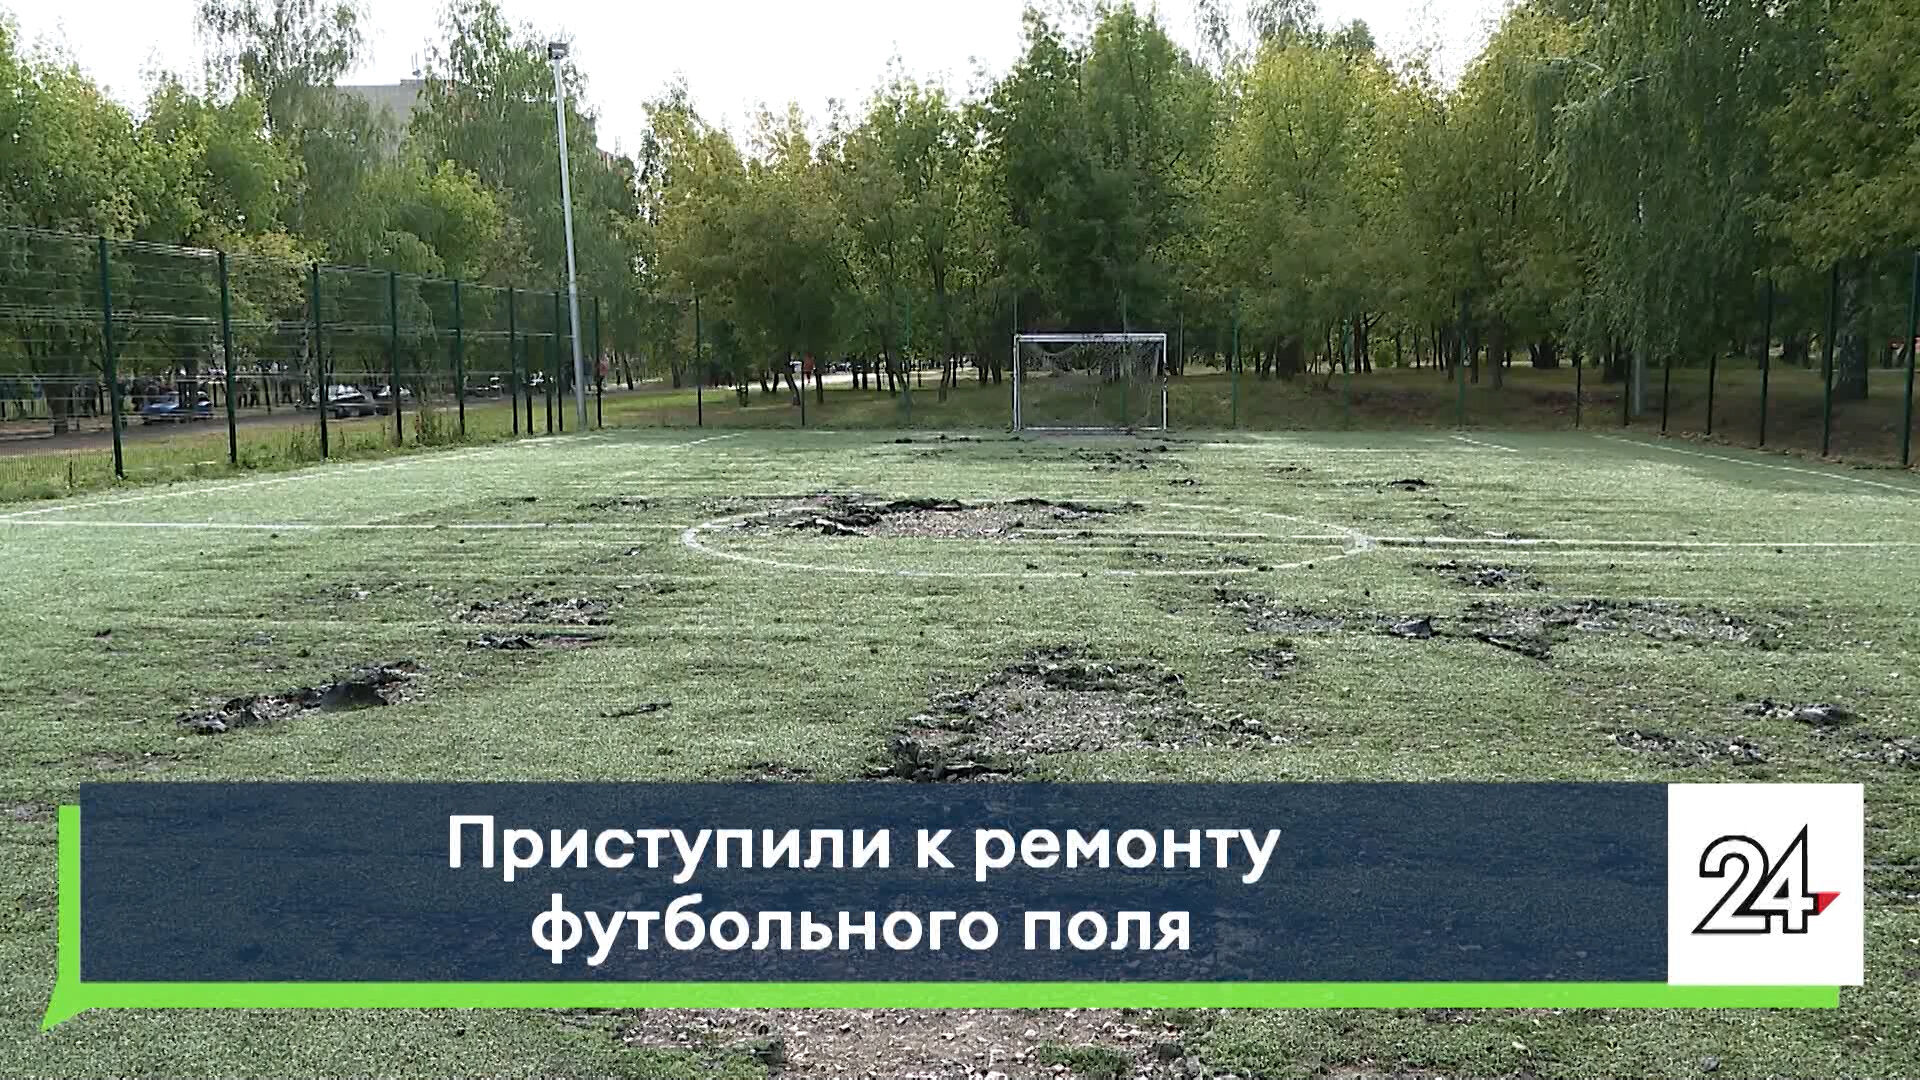 В&nbsp;парке Сидоровки Набережных Челнов будет отремонтировано футбольное поле